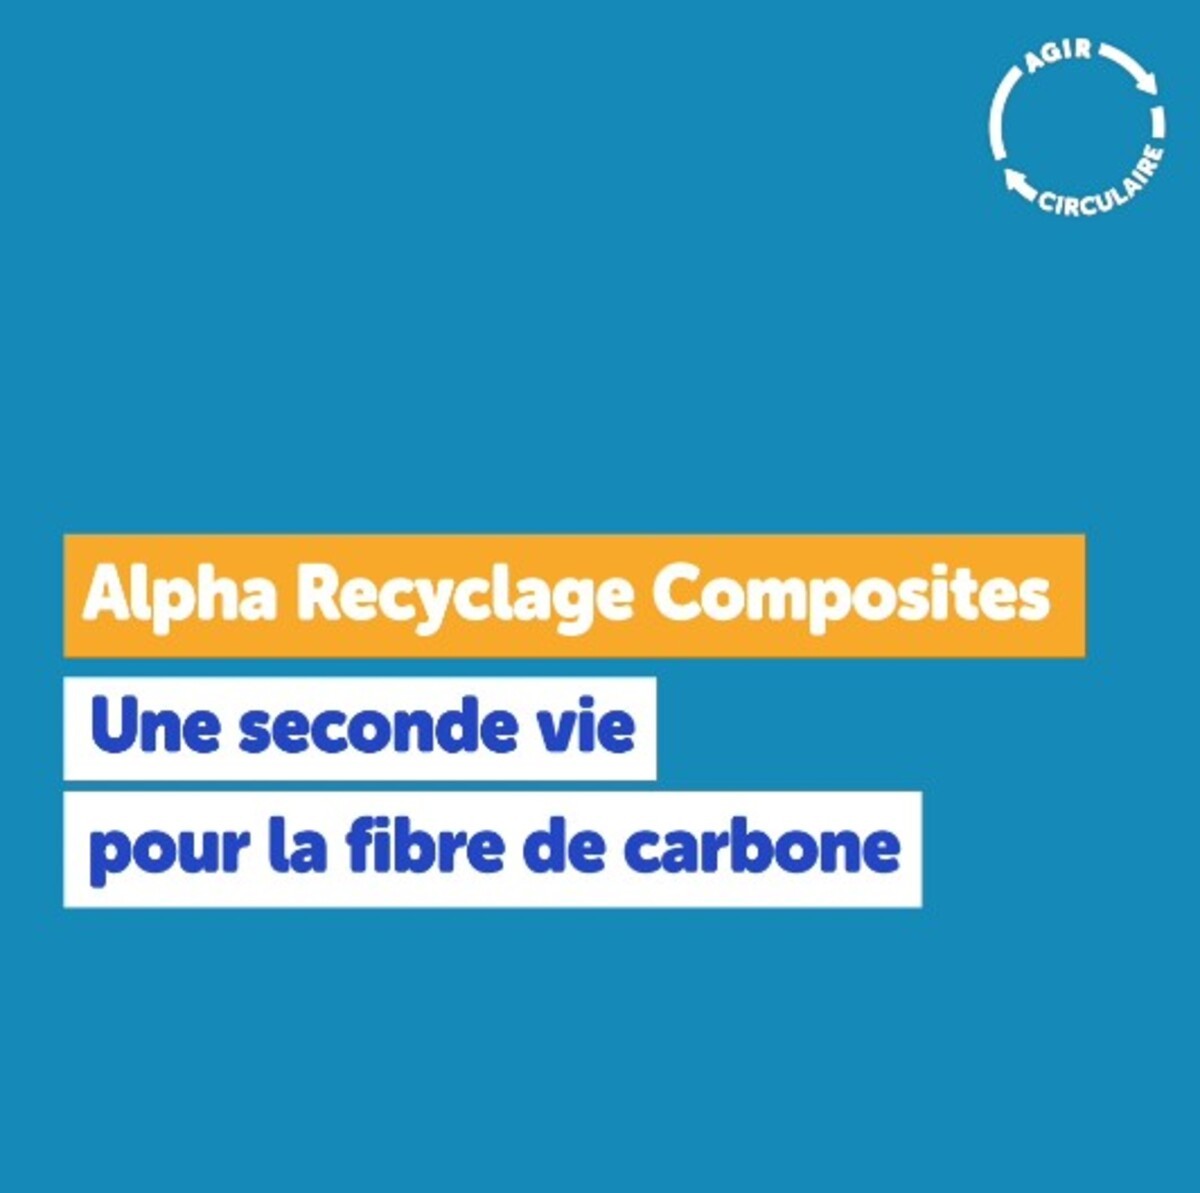 Web série  AGIR CIRCULAIRE - Ep 6 - Alpha Recyclage Composites, une seconde vie pour la fibre de carbonne